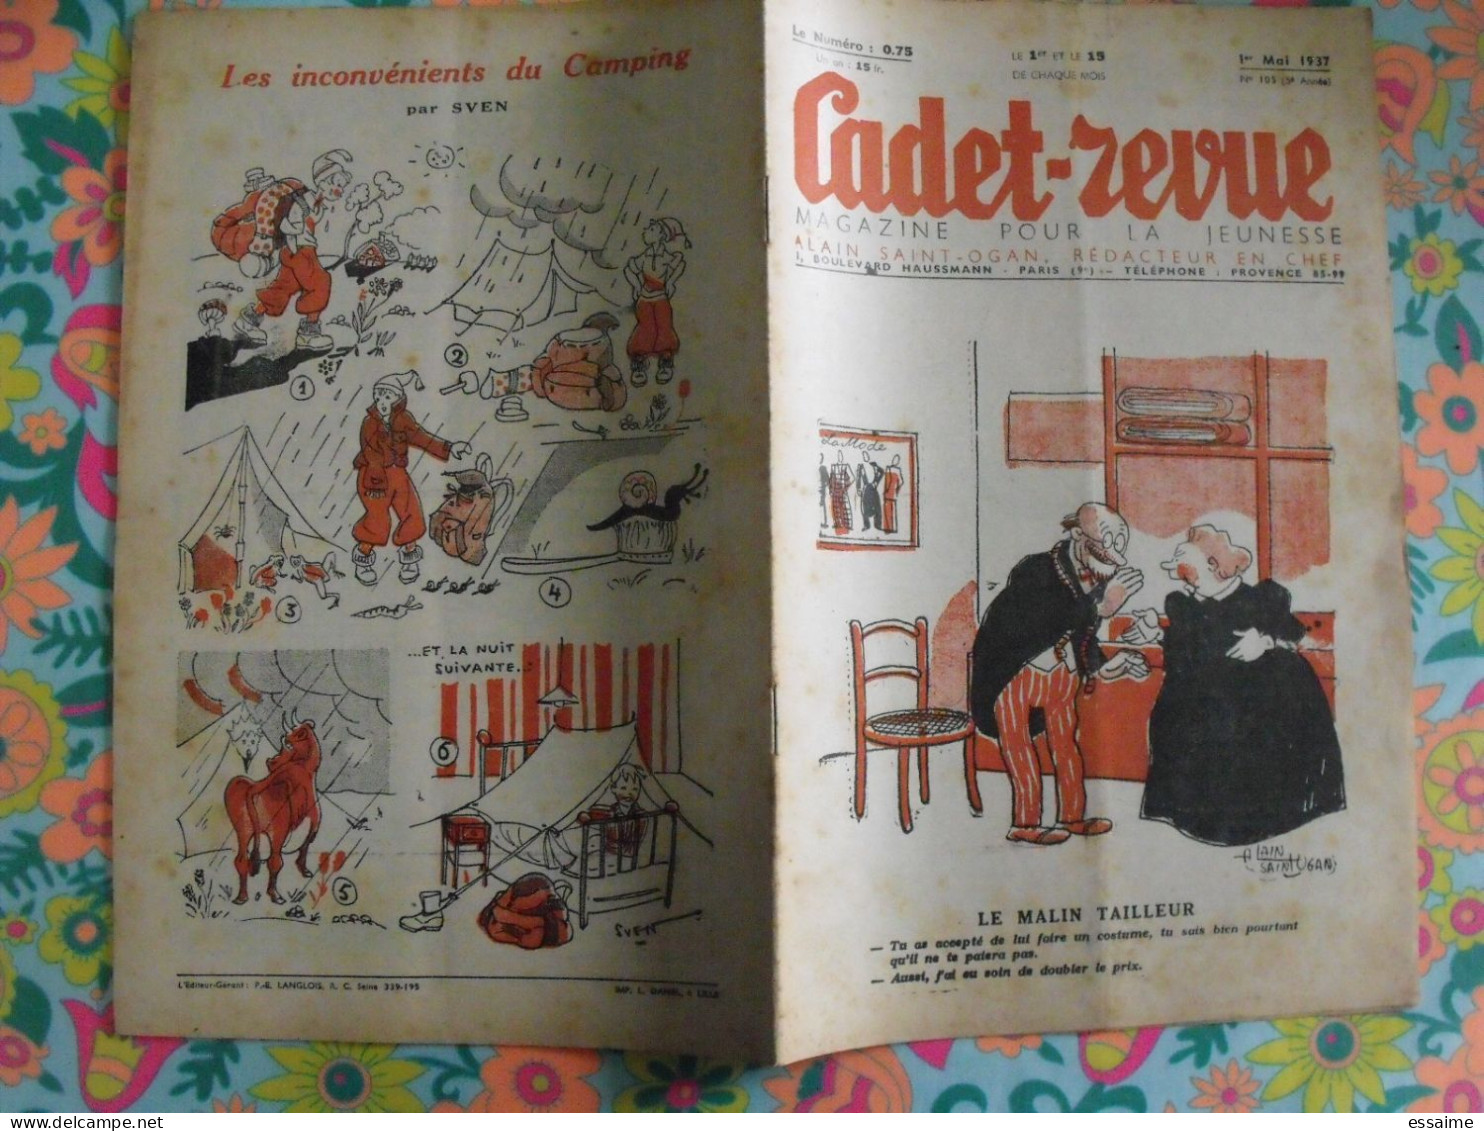 Cadet-Revue N° 105 De 1937, BD. Magazine Pour La Jeunesse. Alain Saint-Ogan. Mitou - Humor